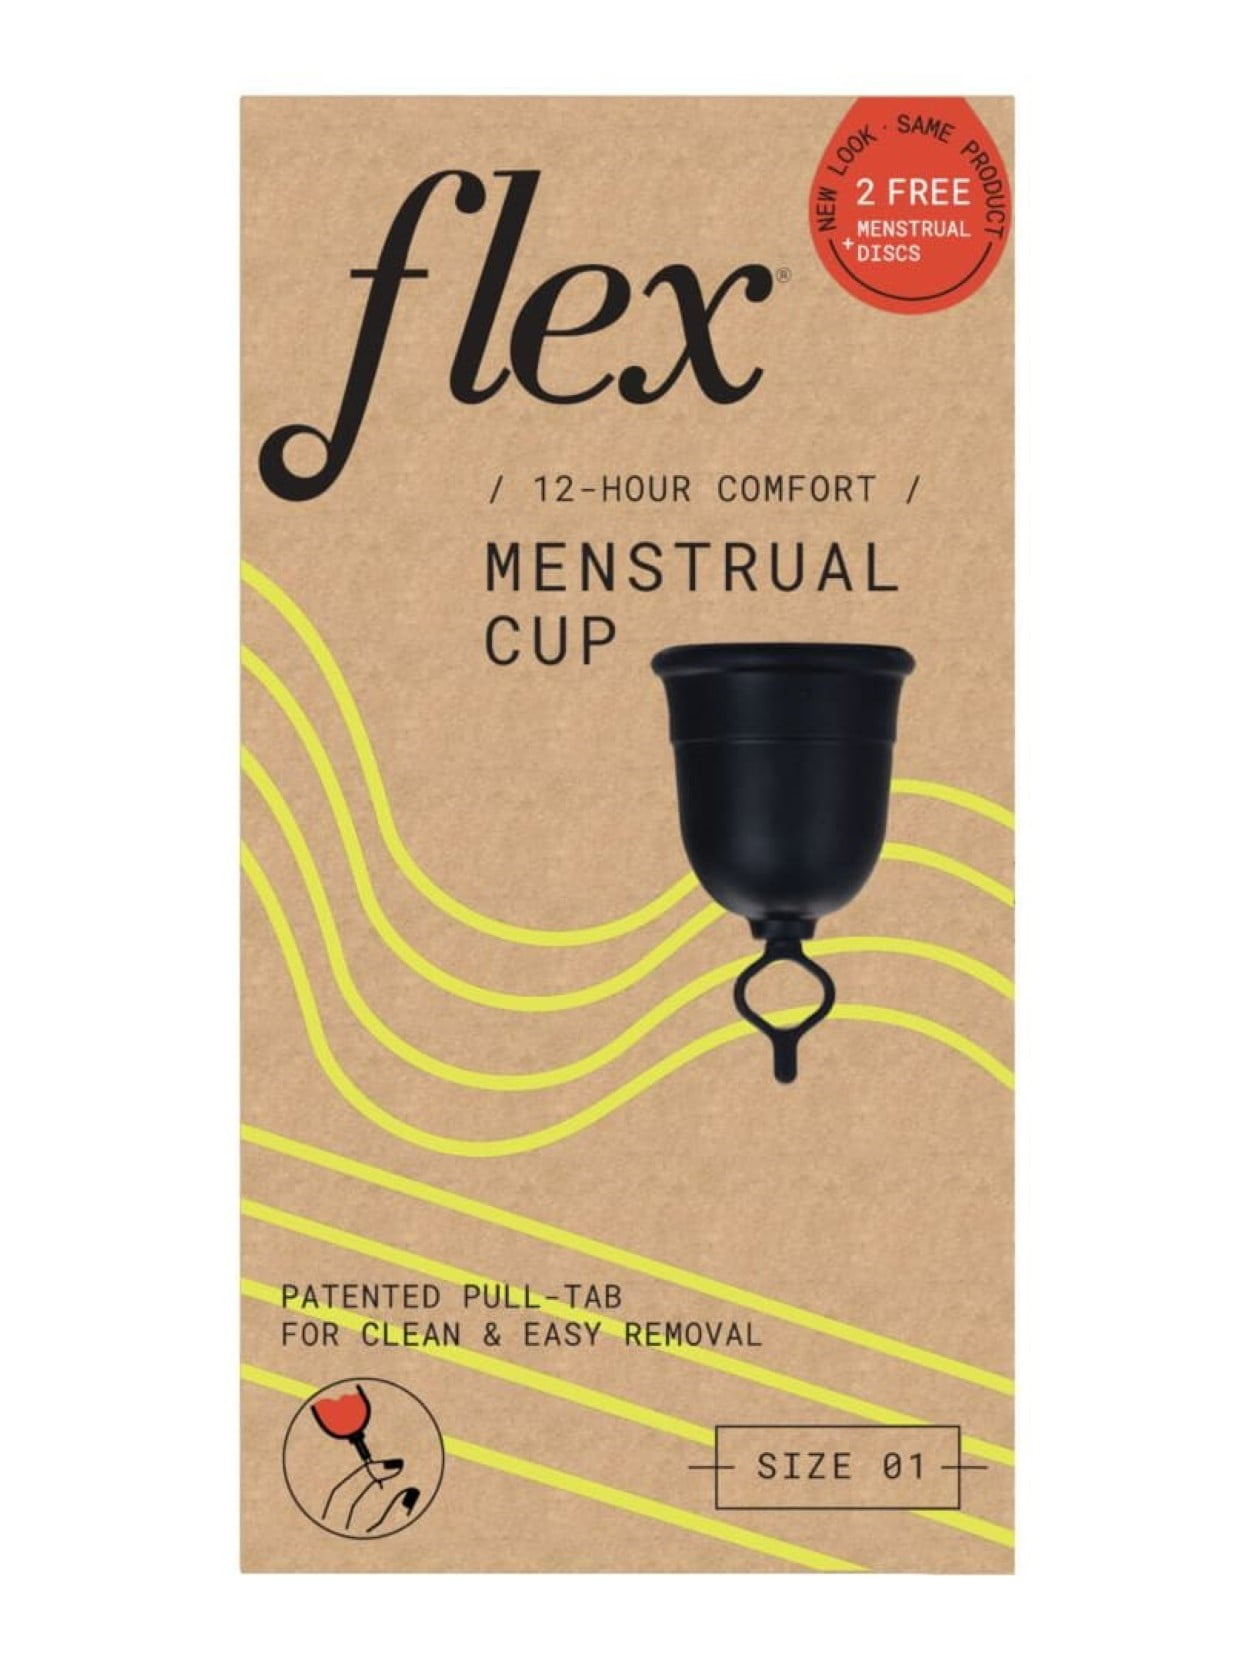 Flexcup